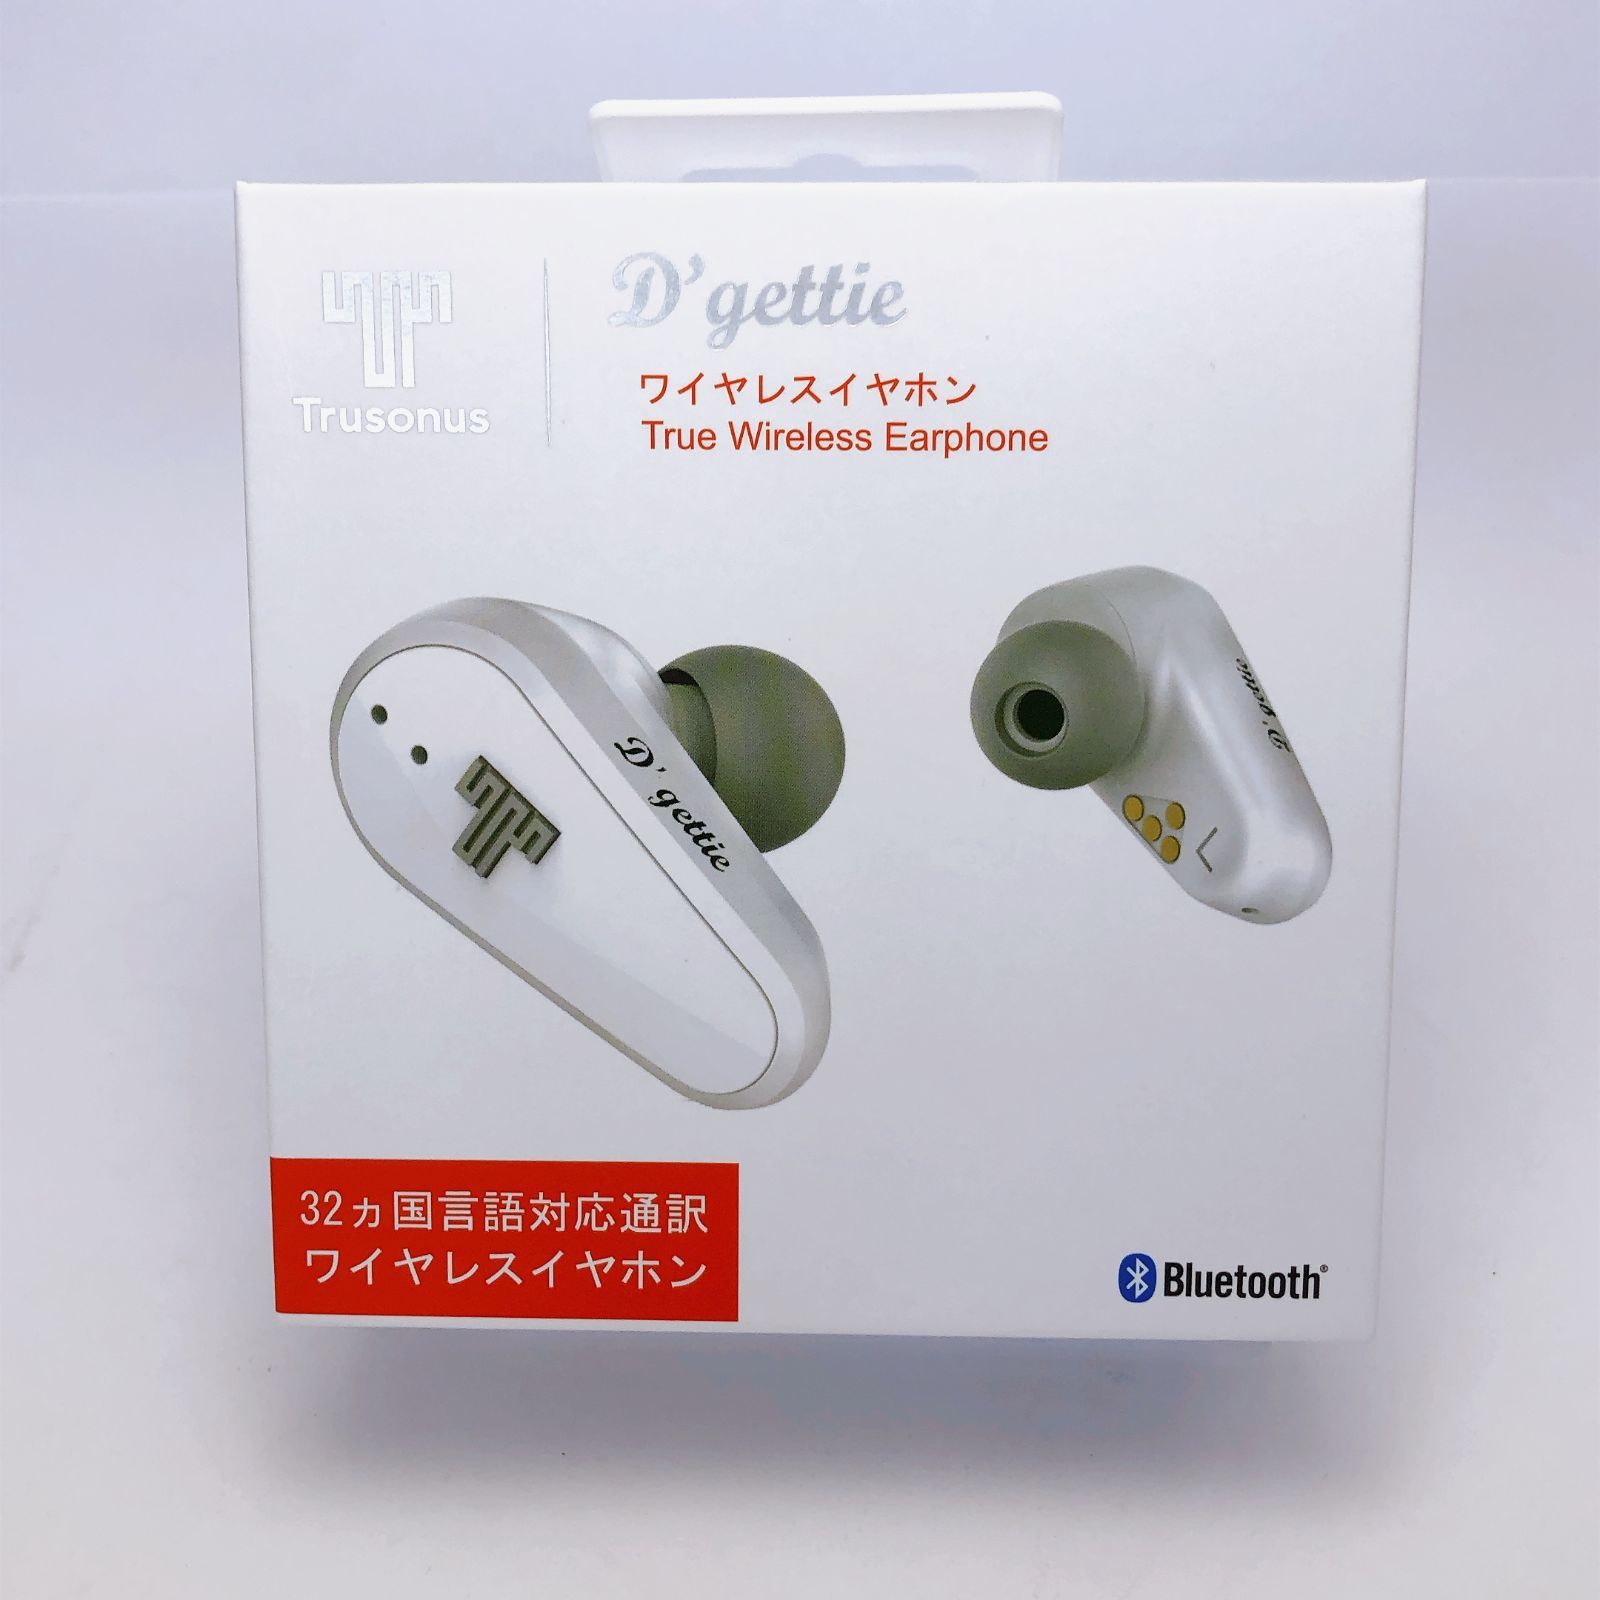 ワイヤレスイヤホン 32ヵ国 音声 翻訳 Bluetooth D'gettie trusonus 